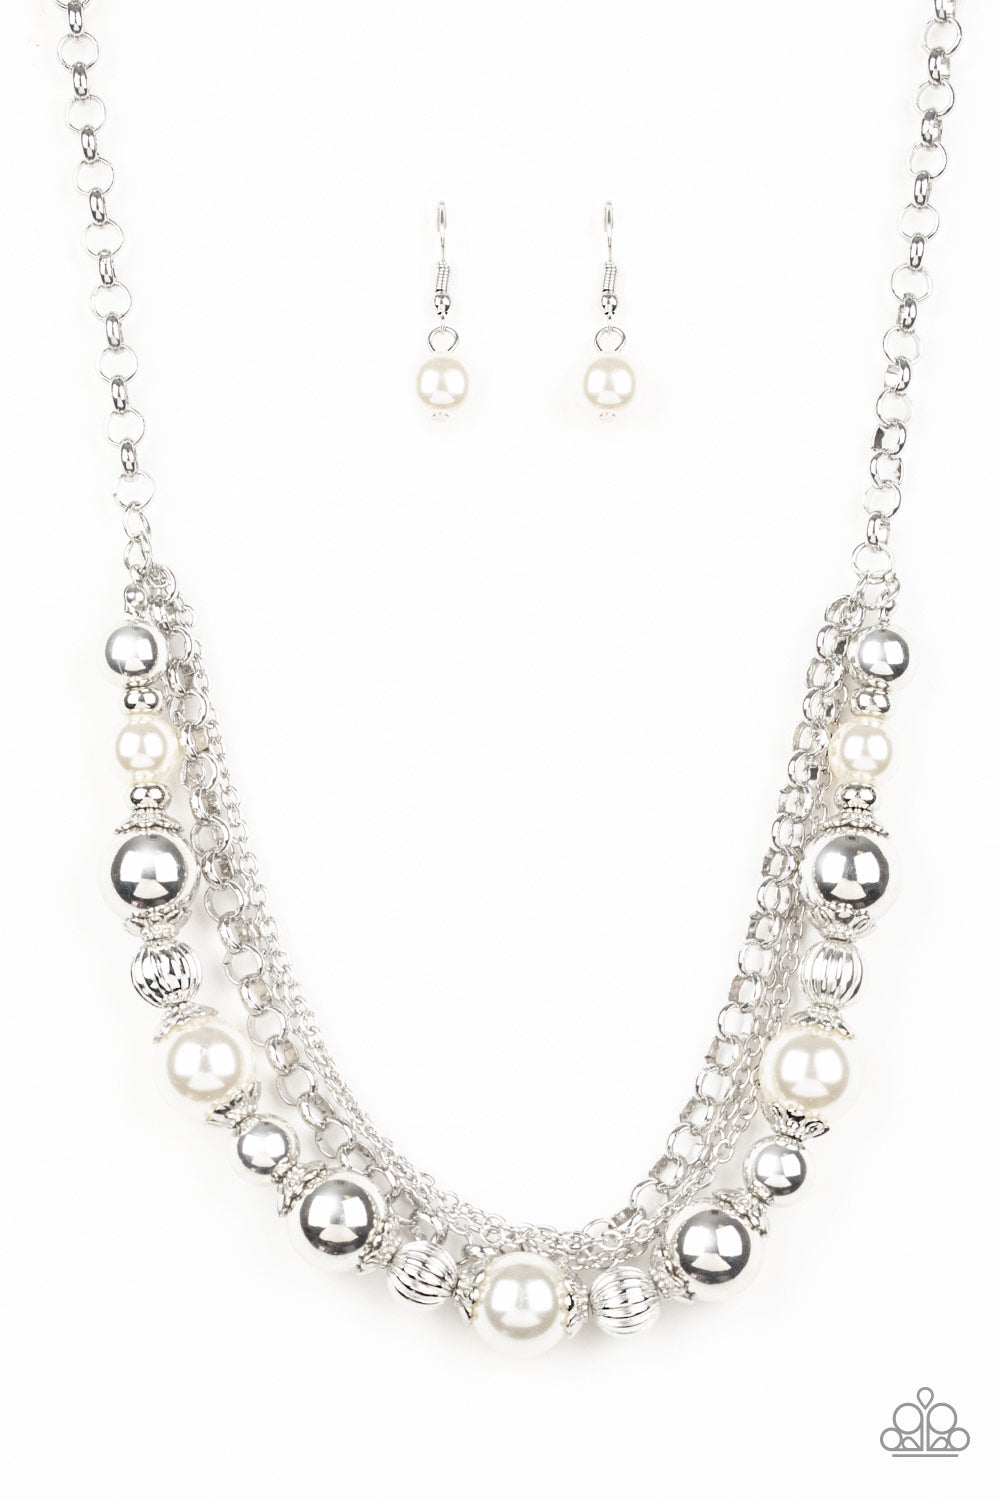 paparazzi-accessories-5th-avenue-romance-white-necklace